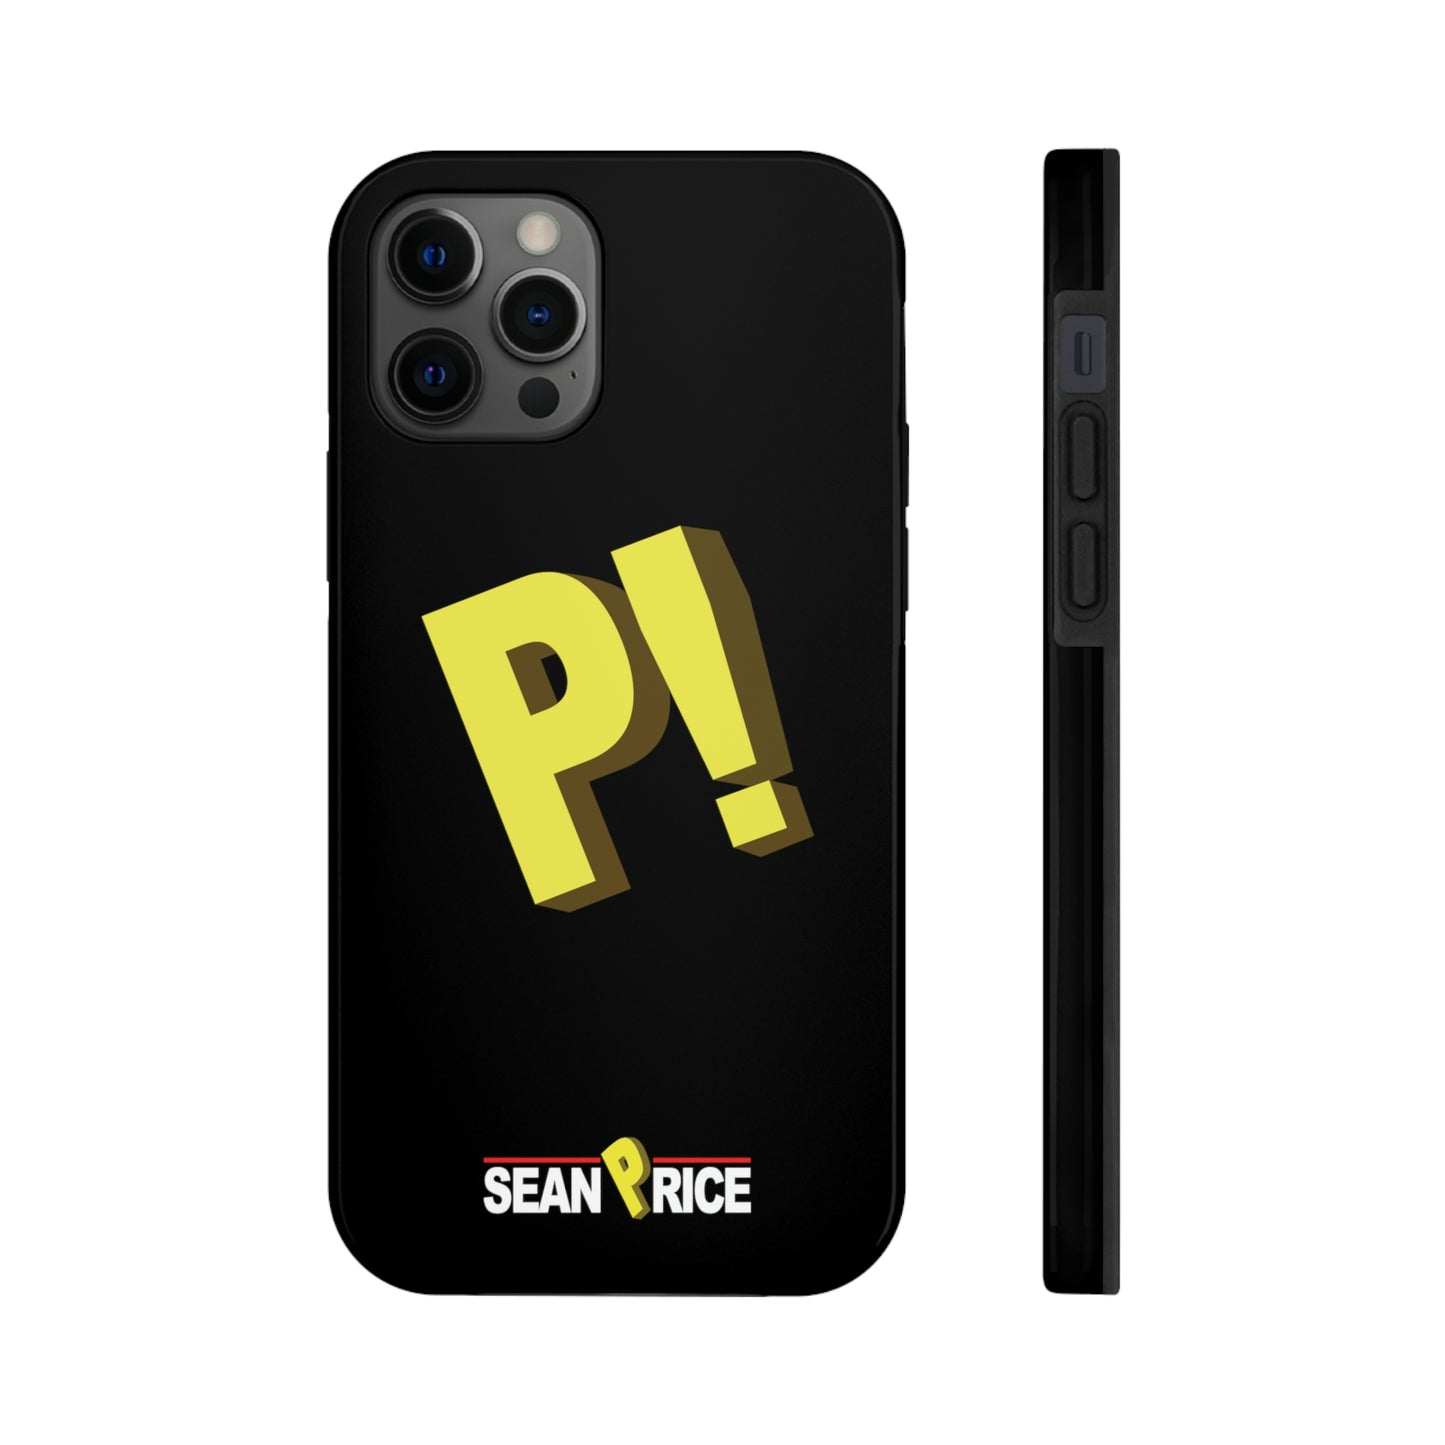 Sean Price - P! Phone Cases